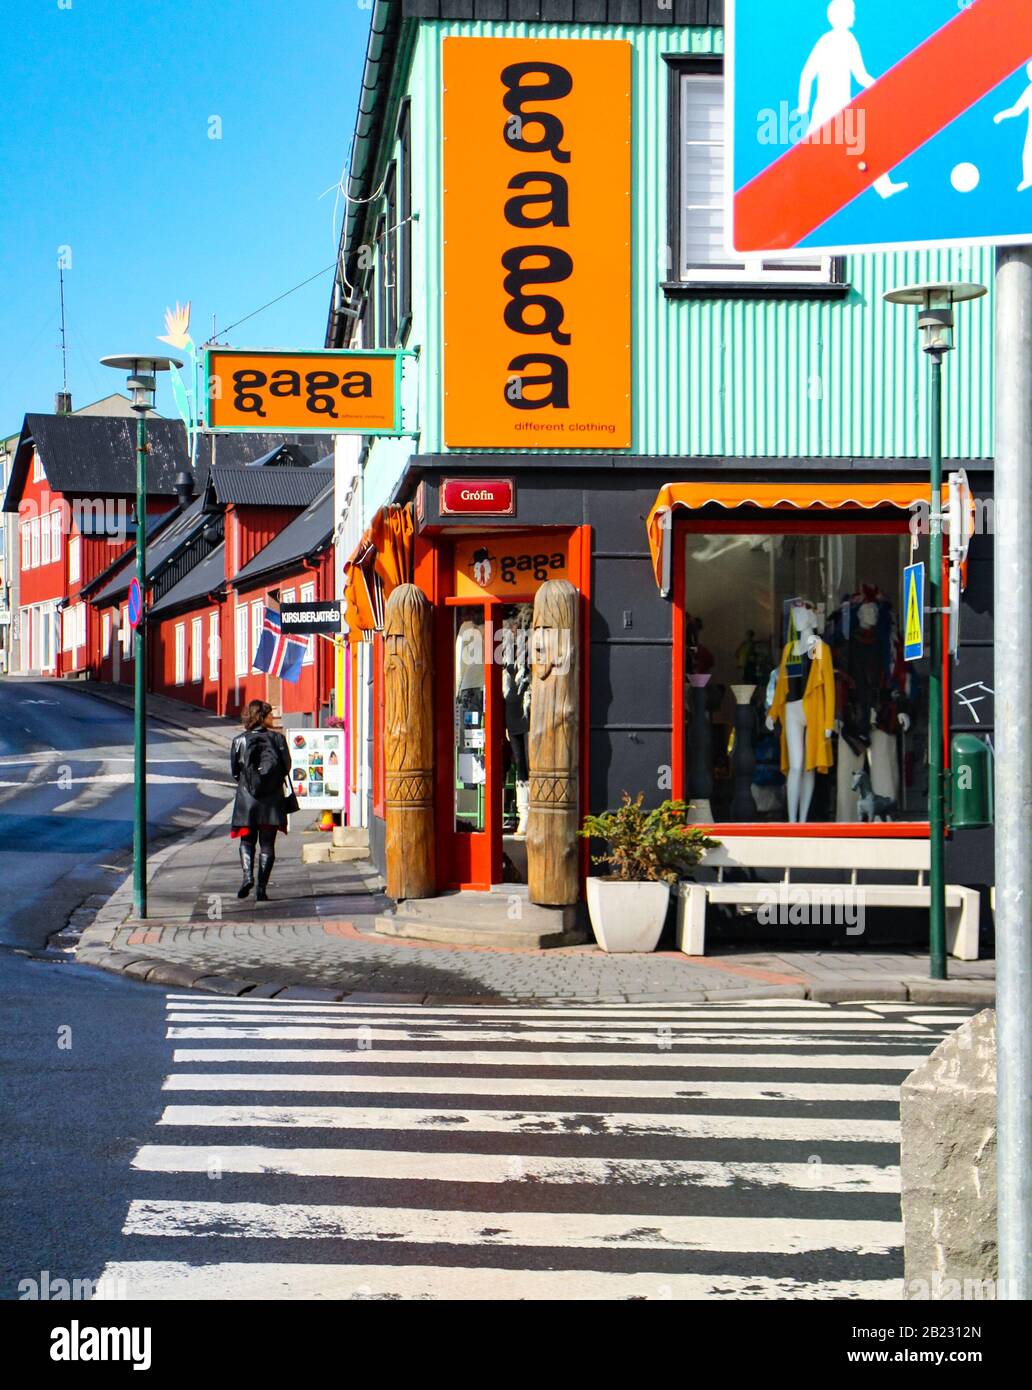 Reykjavik, Island - 19. April 2014: Straßenszene in Reykjavik, der Hauptstadt Islands mit bunten Gebäuden im Stadtzentrum. Stockfoto